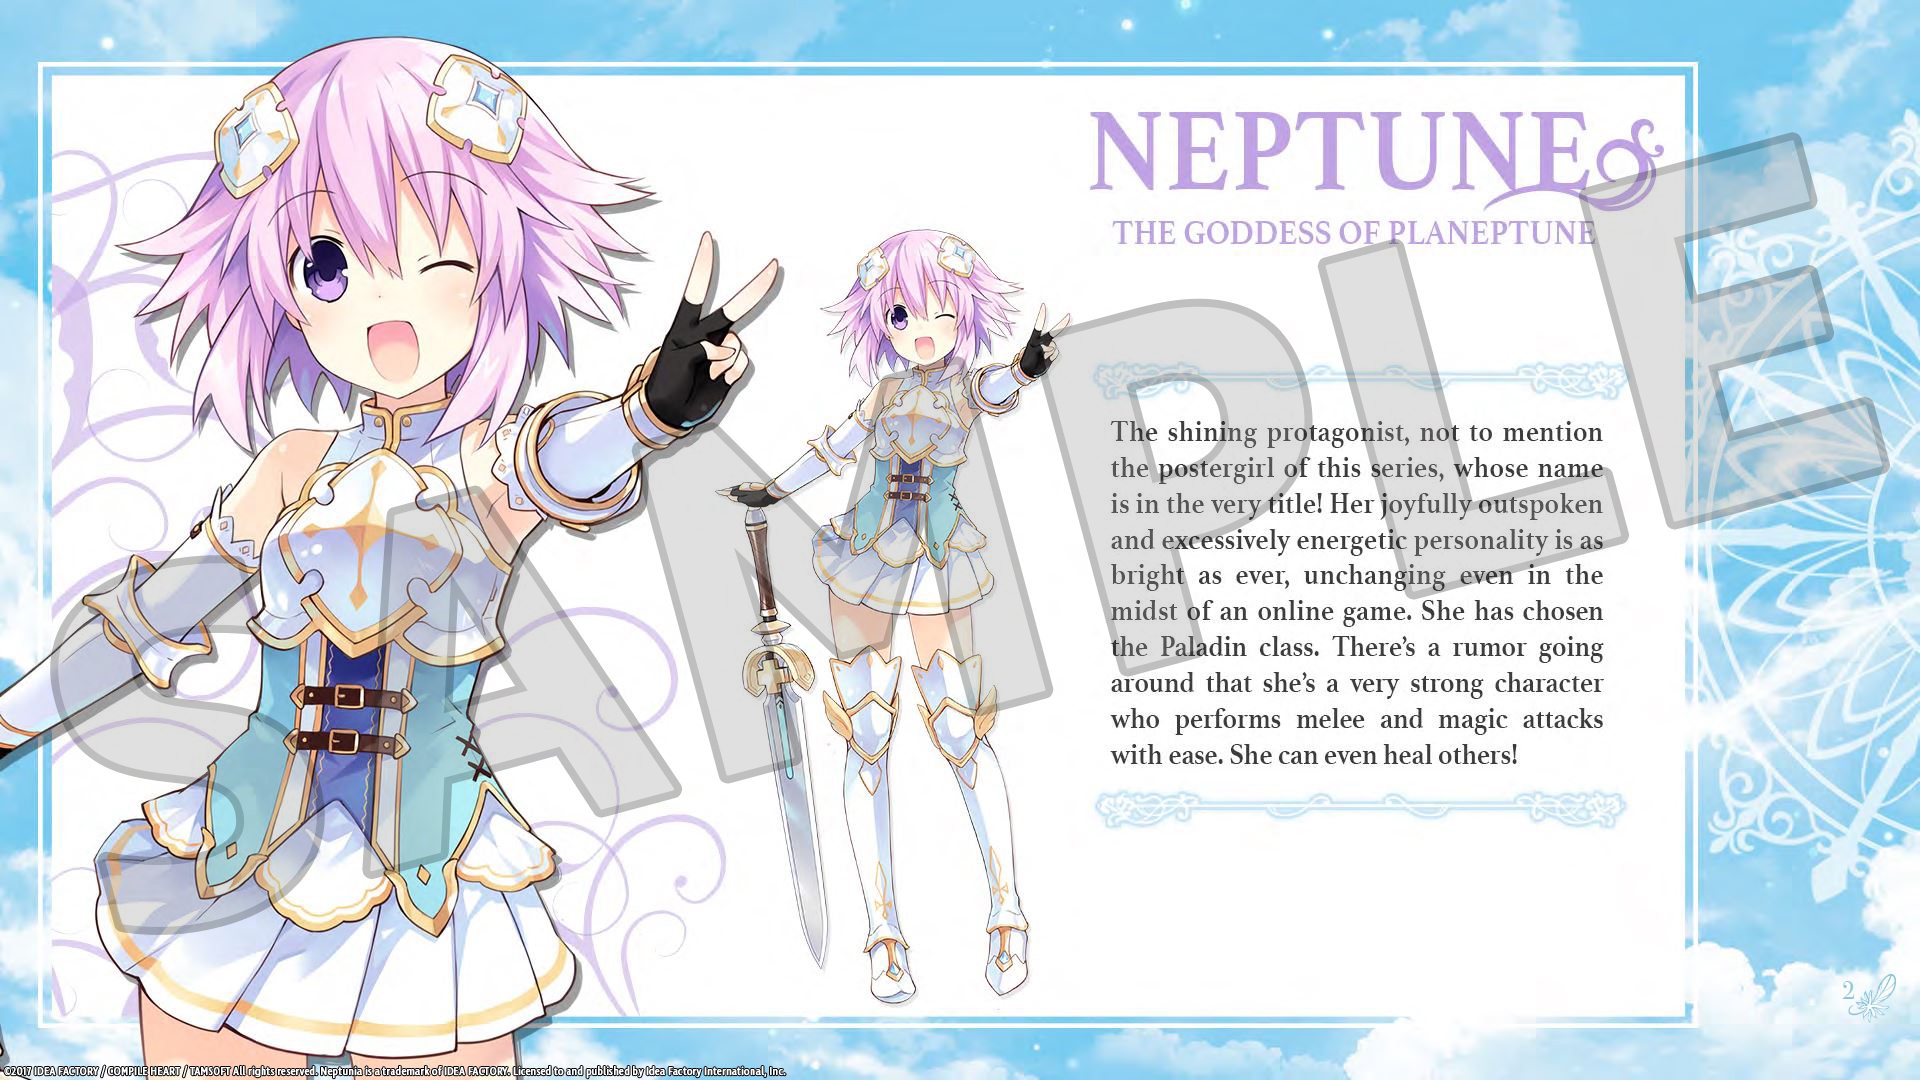 Cyberdimension Neptunia: 4 Goddesses Online - Deluxe Pack DLC Steam CD Key, 1.69 usd